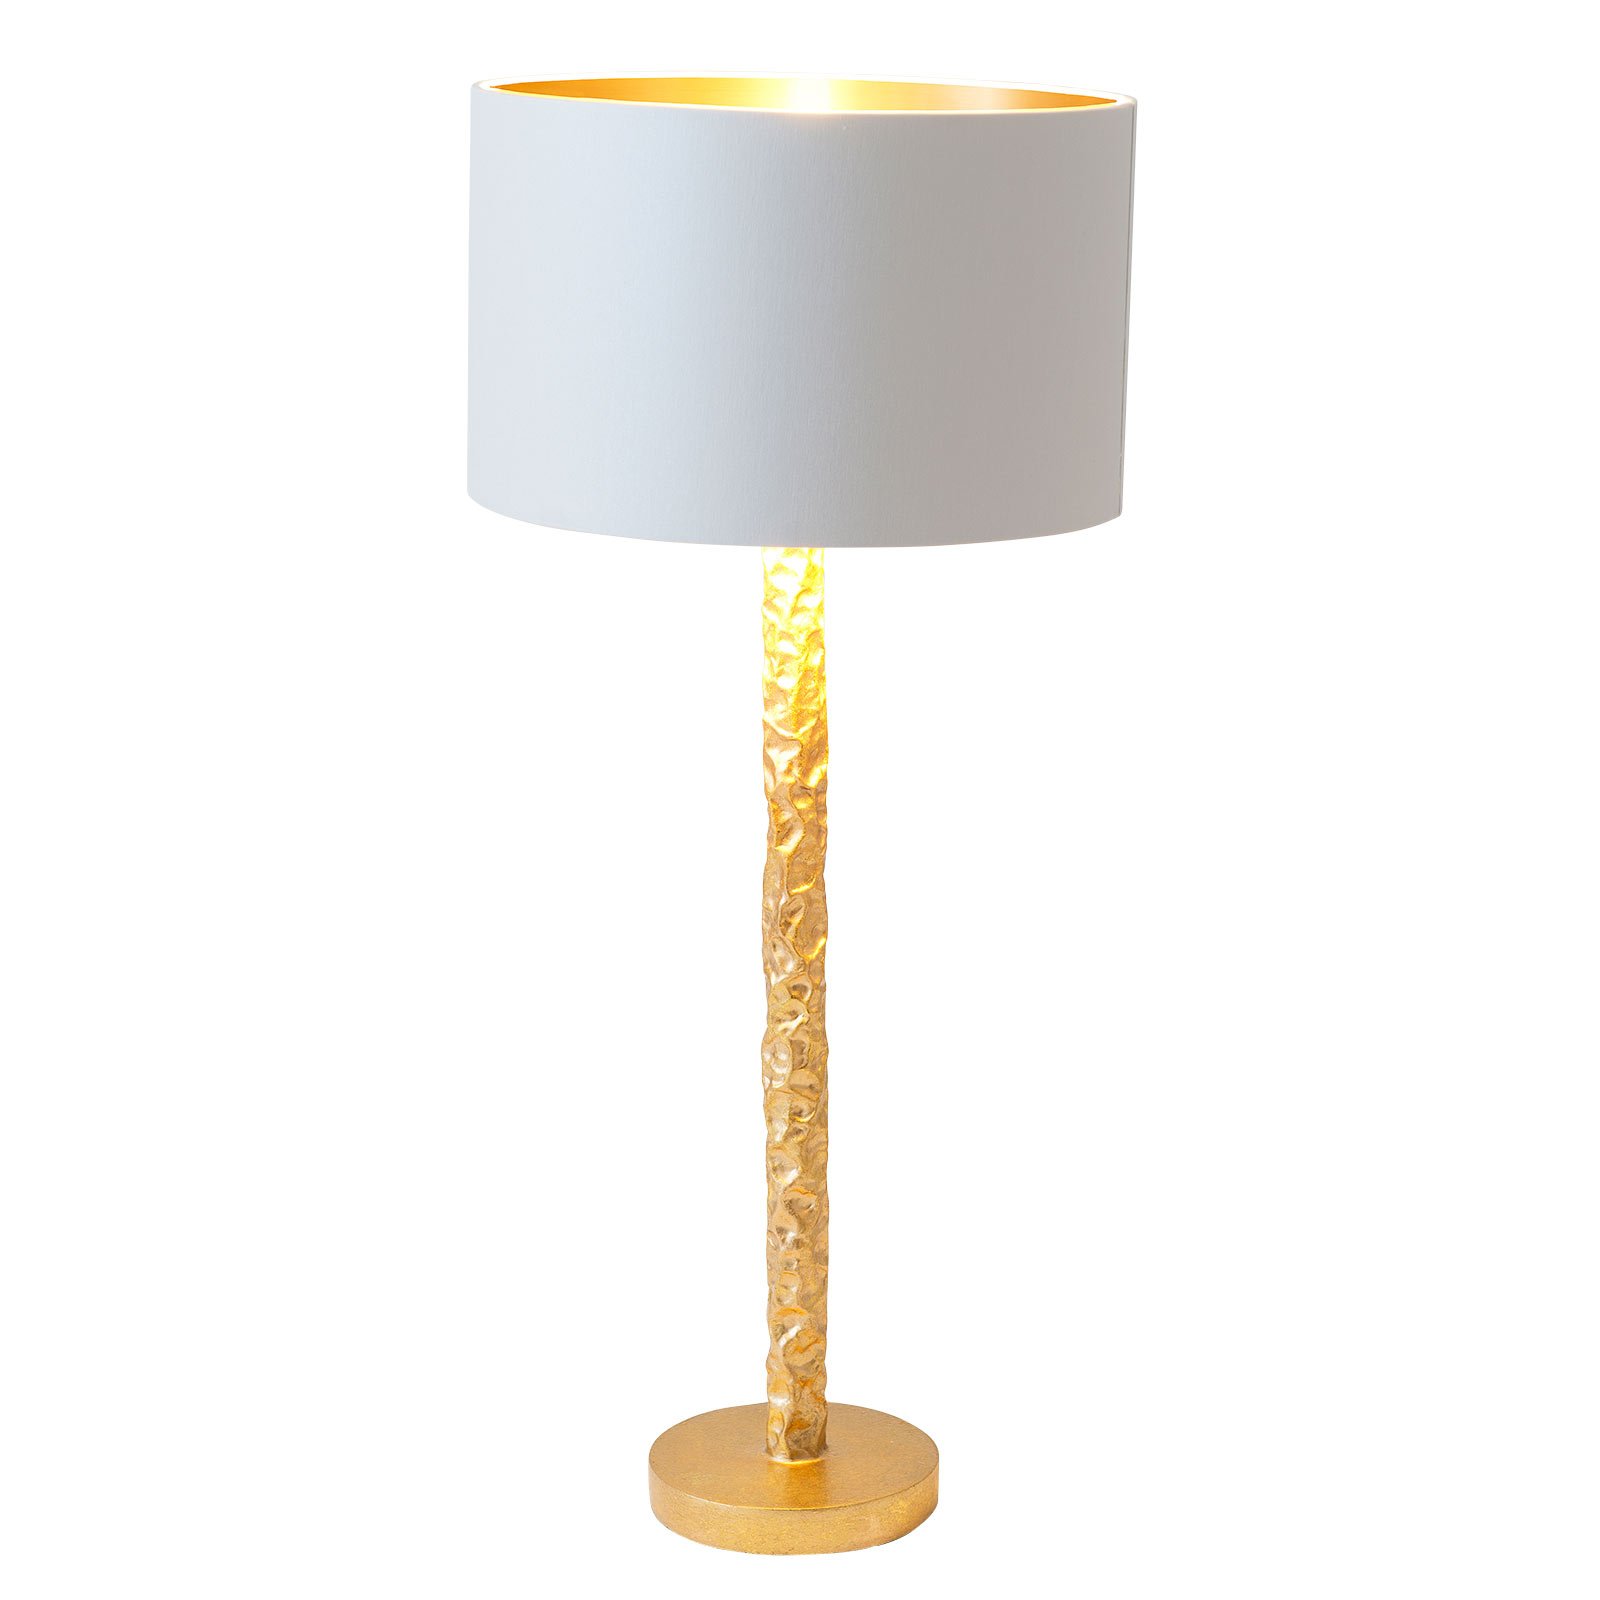 Tafellamp Cancelliere Rotonda wit/goud 57 cm